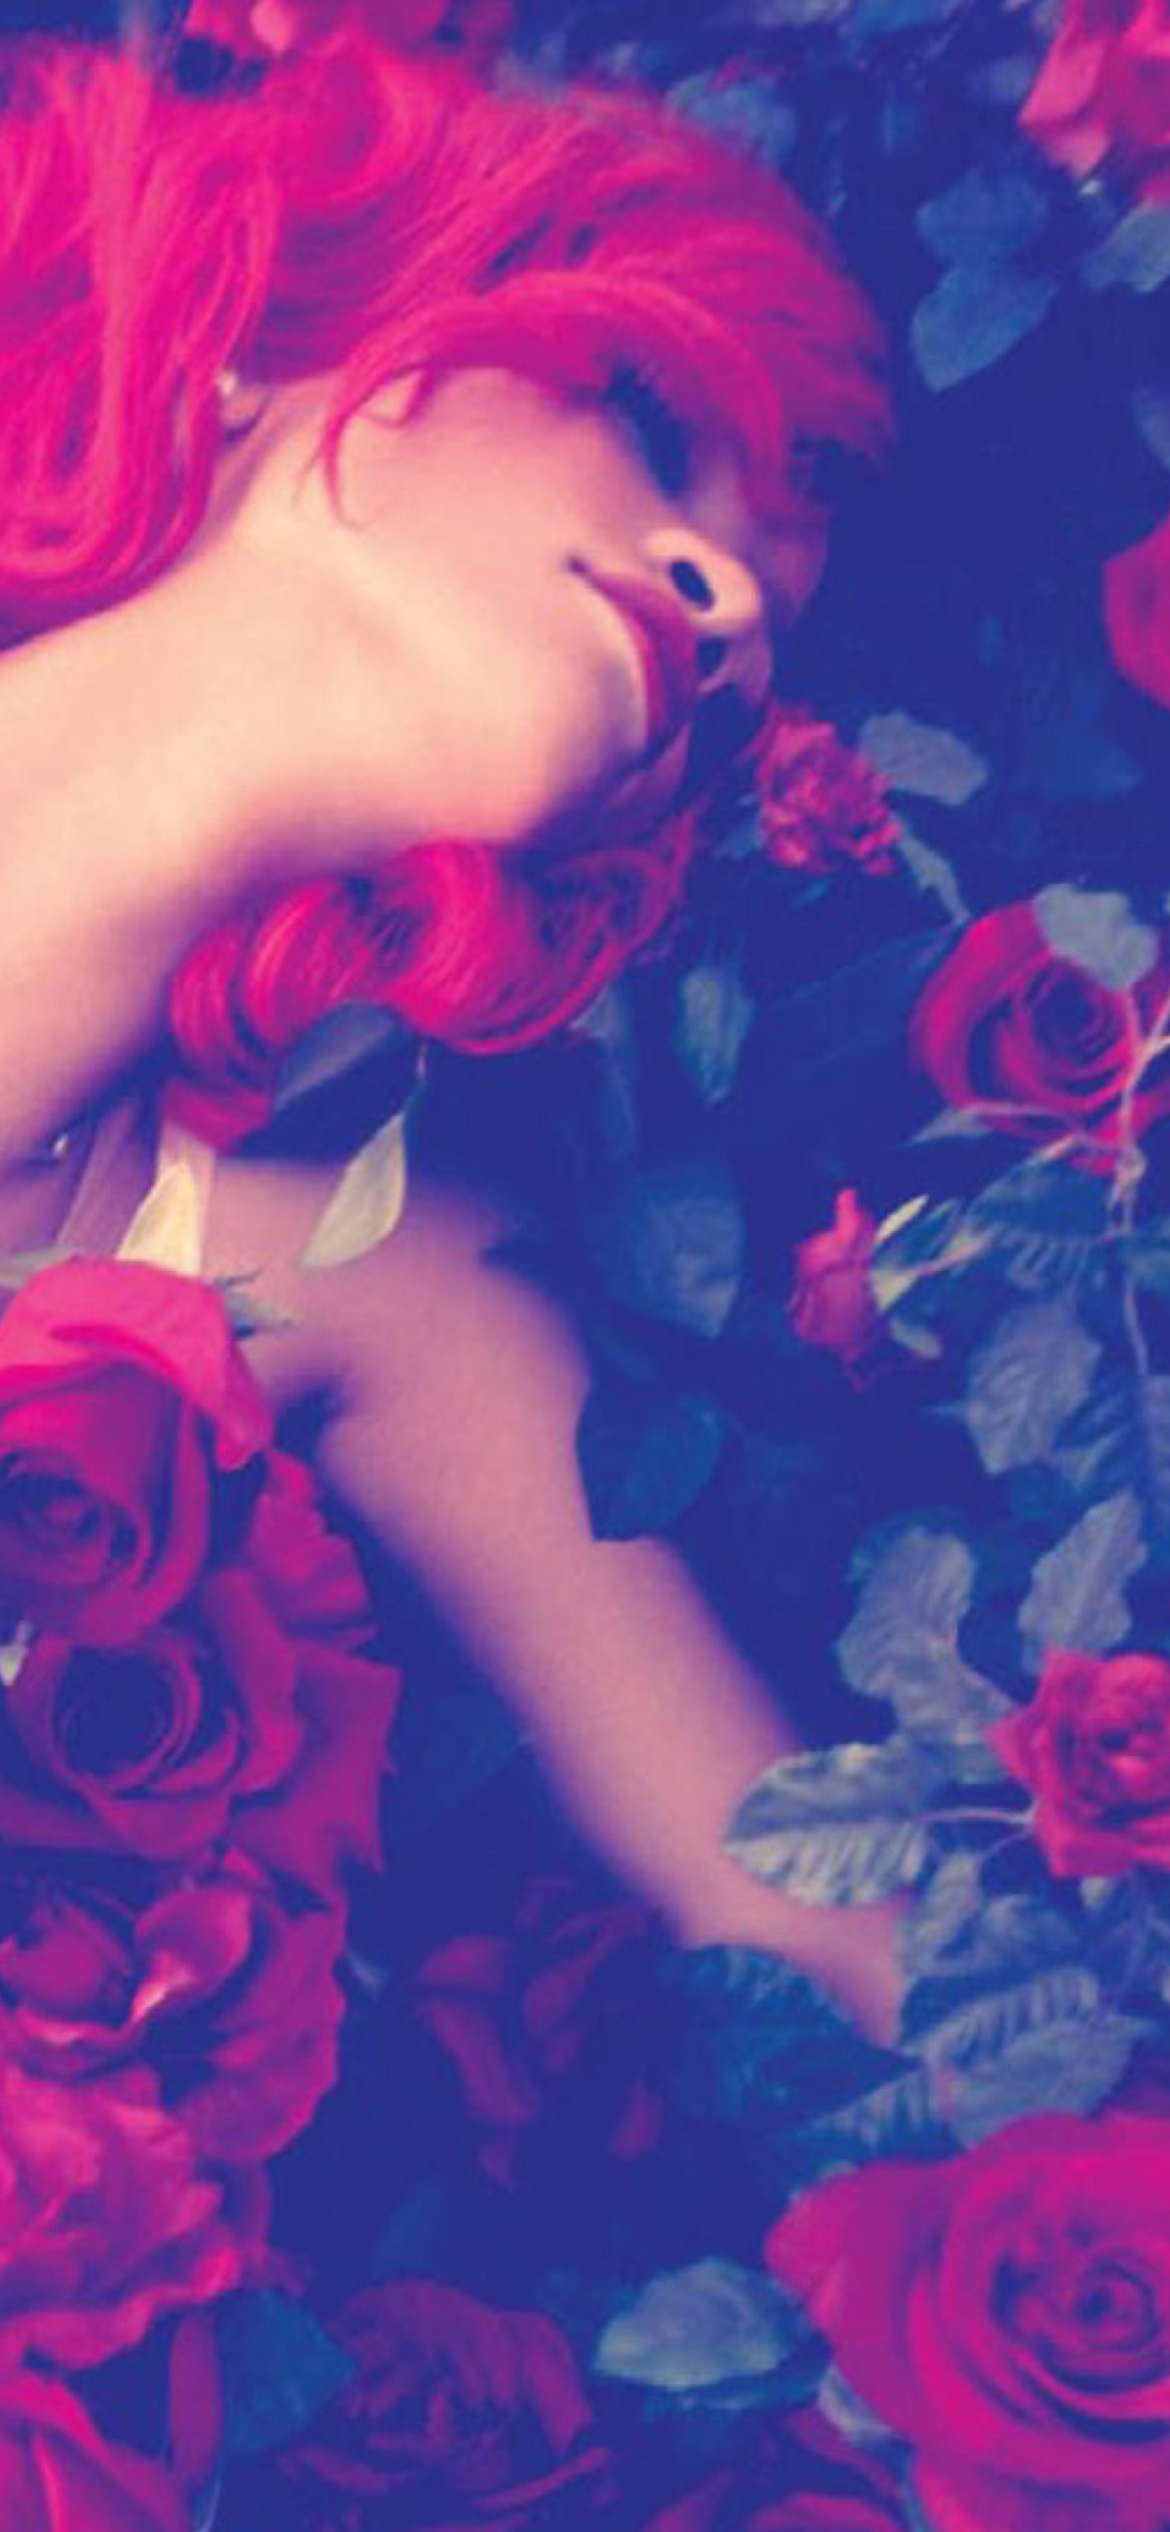 Rihanna's Roses screenshot #1 1170x2532